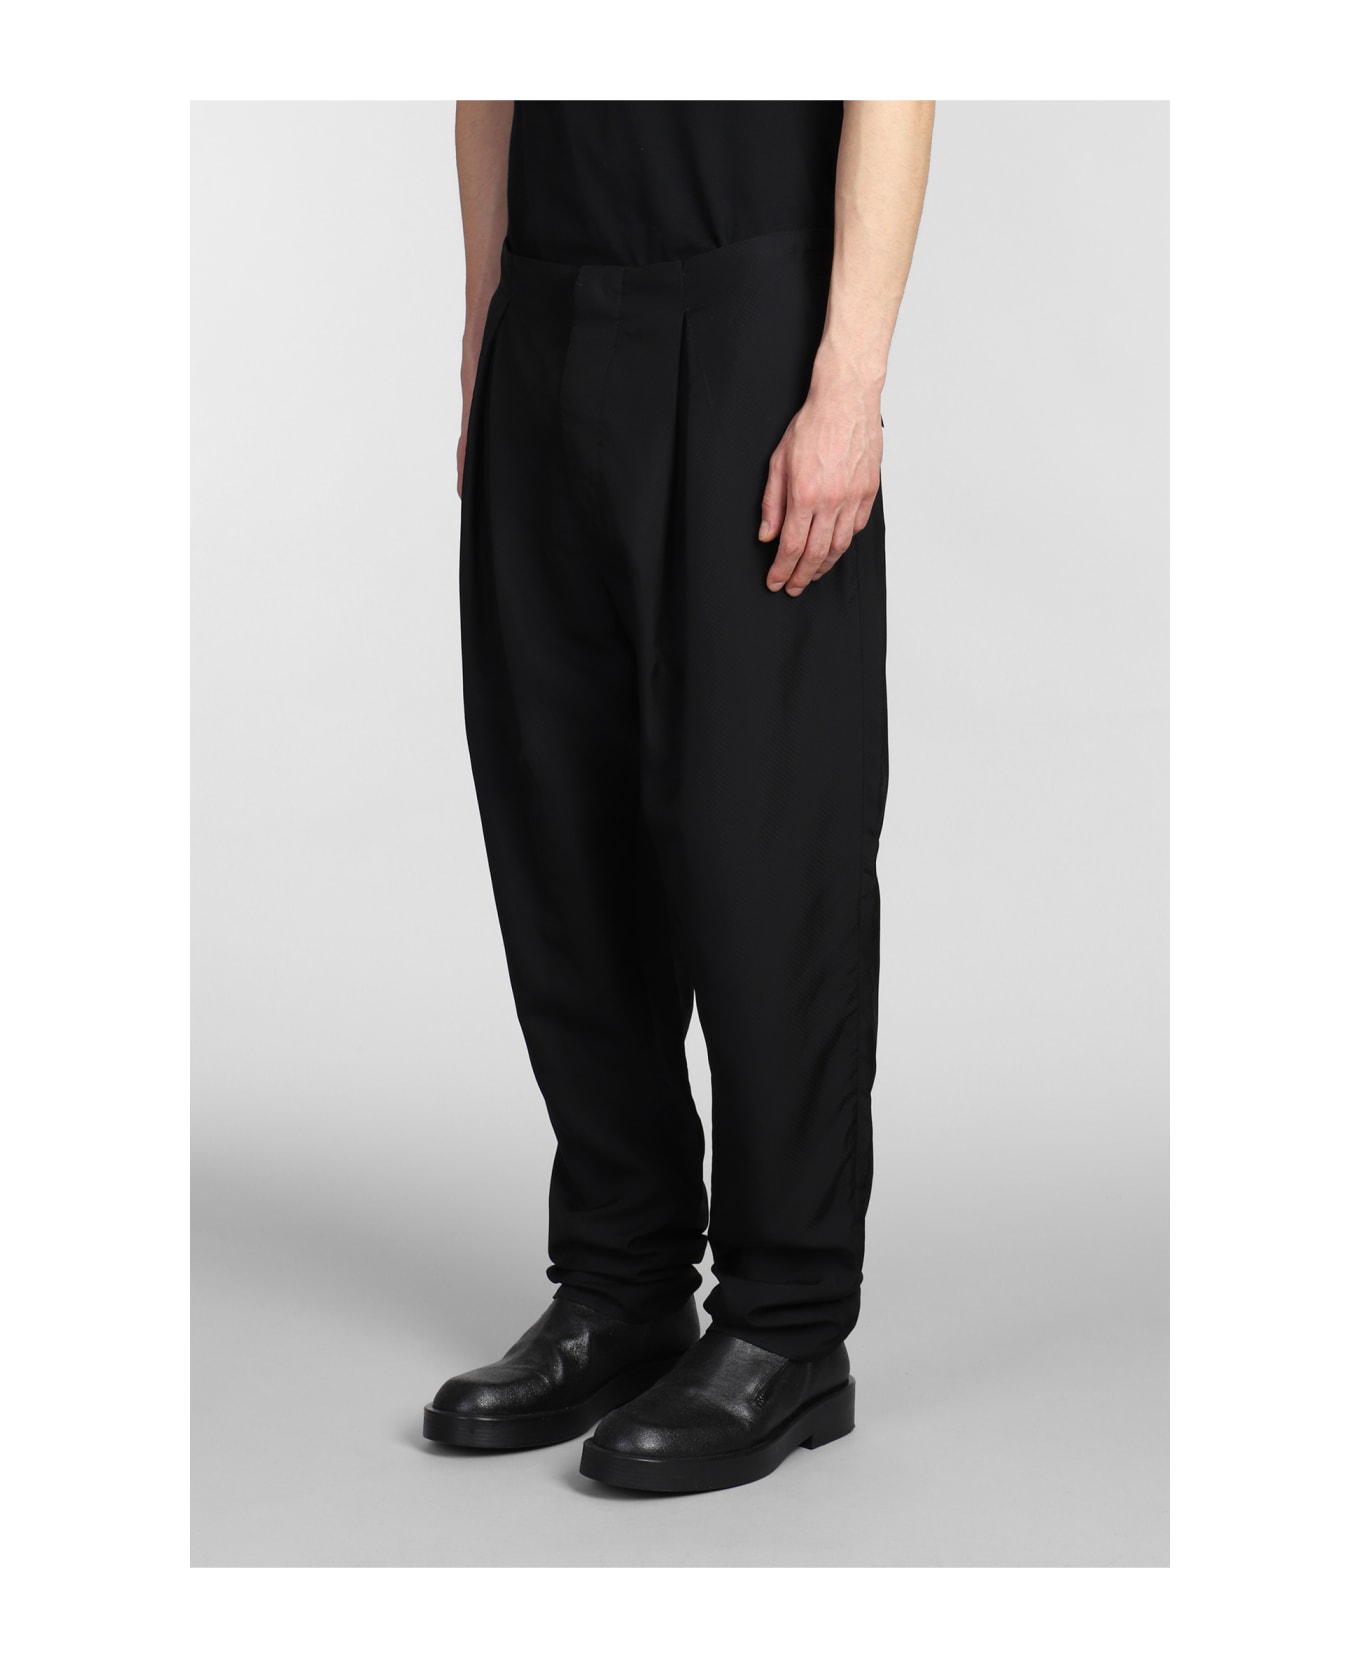 Sapio N.88 Pants In Black Cotton - black